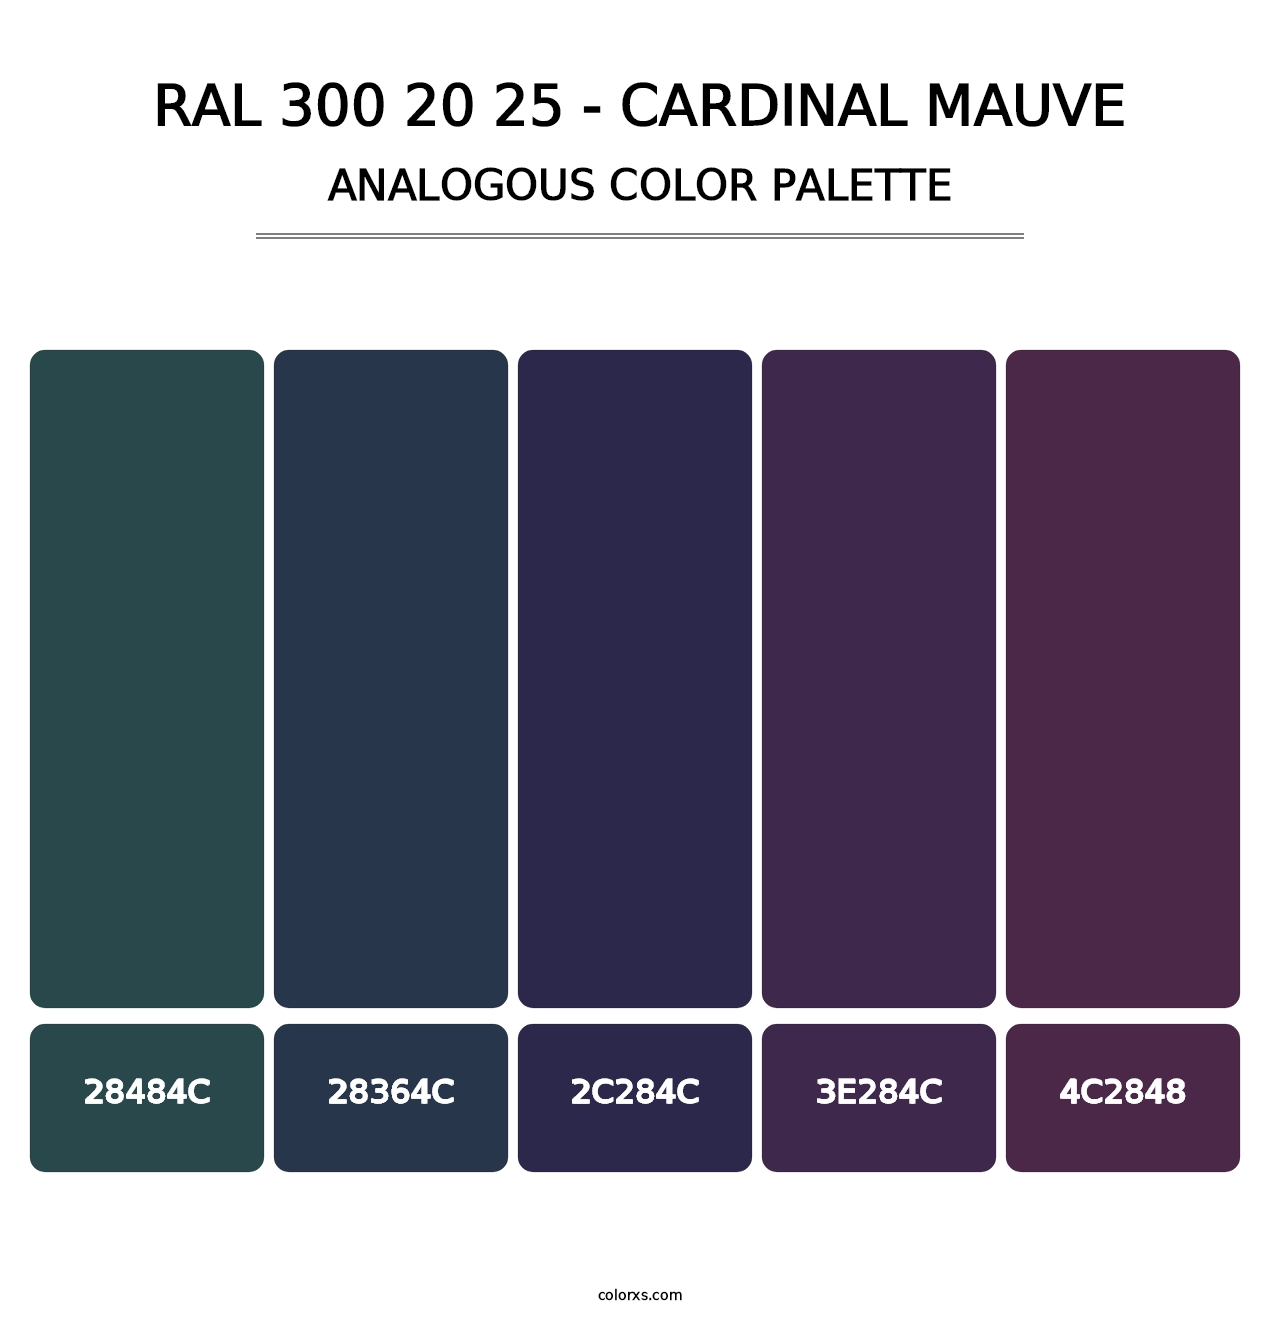 RAL 300 20 25 - Cardinal Mauve - Analogous Color Palette